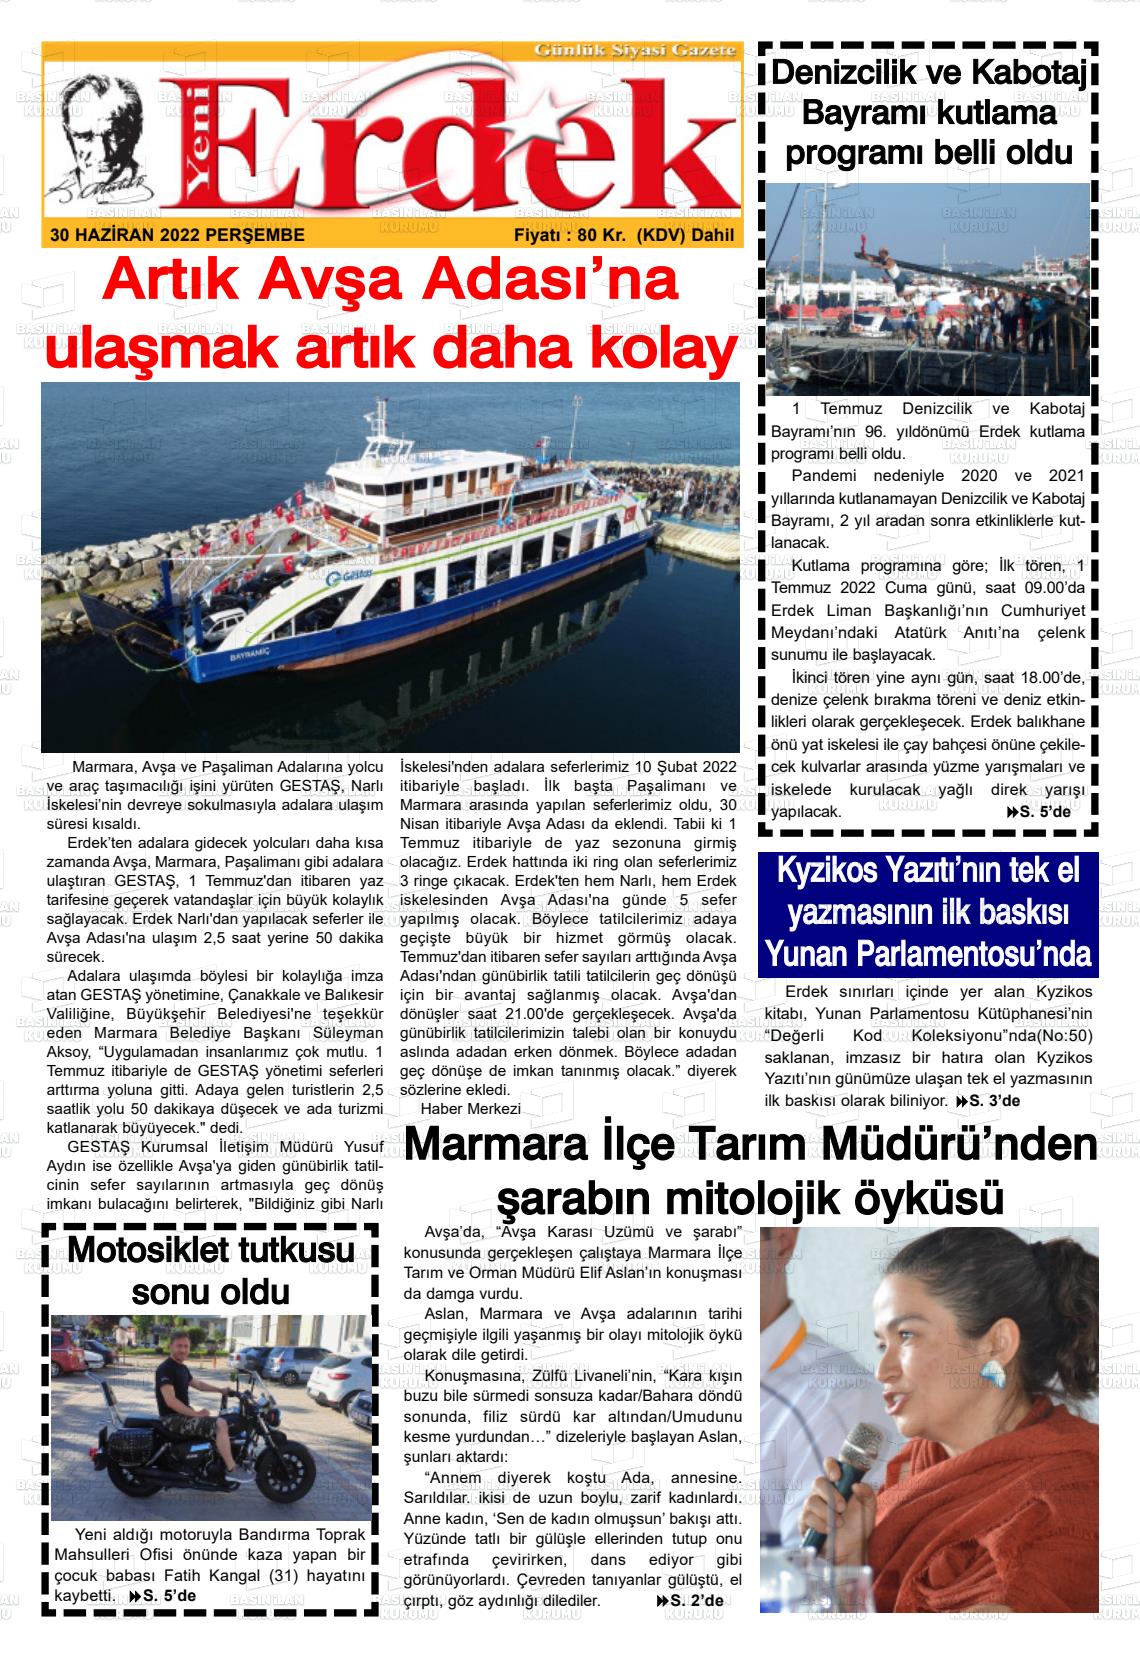 02 Temmuz 2022 Yeni Erdek Gazete Manşeti